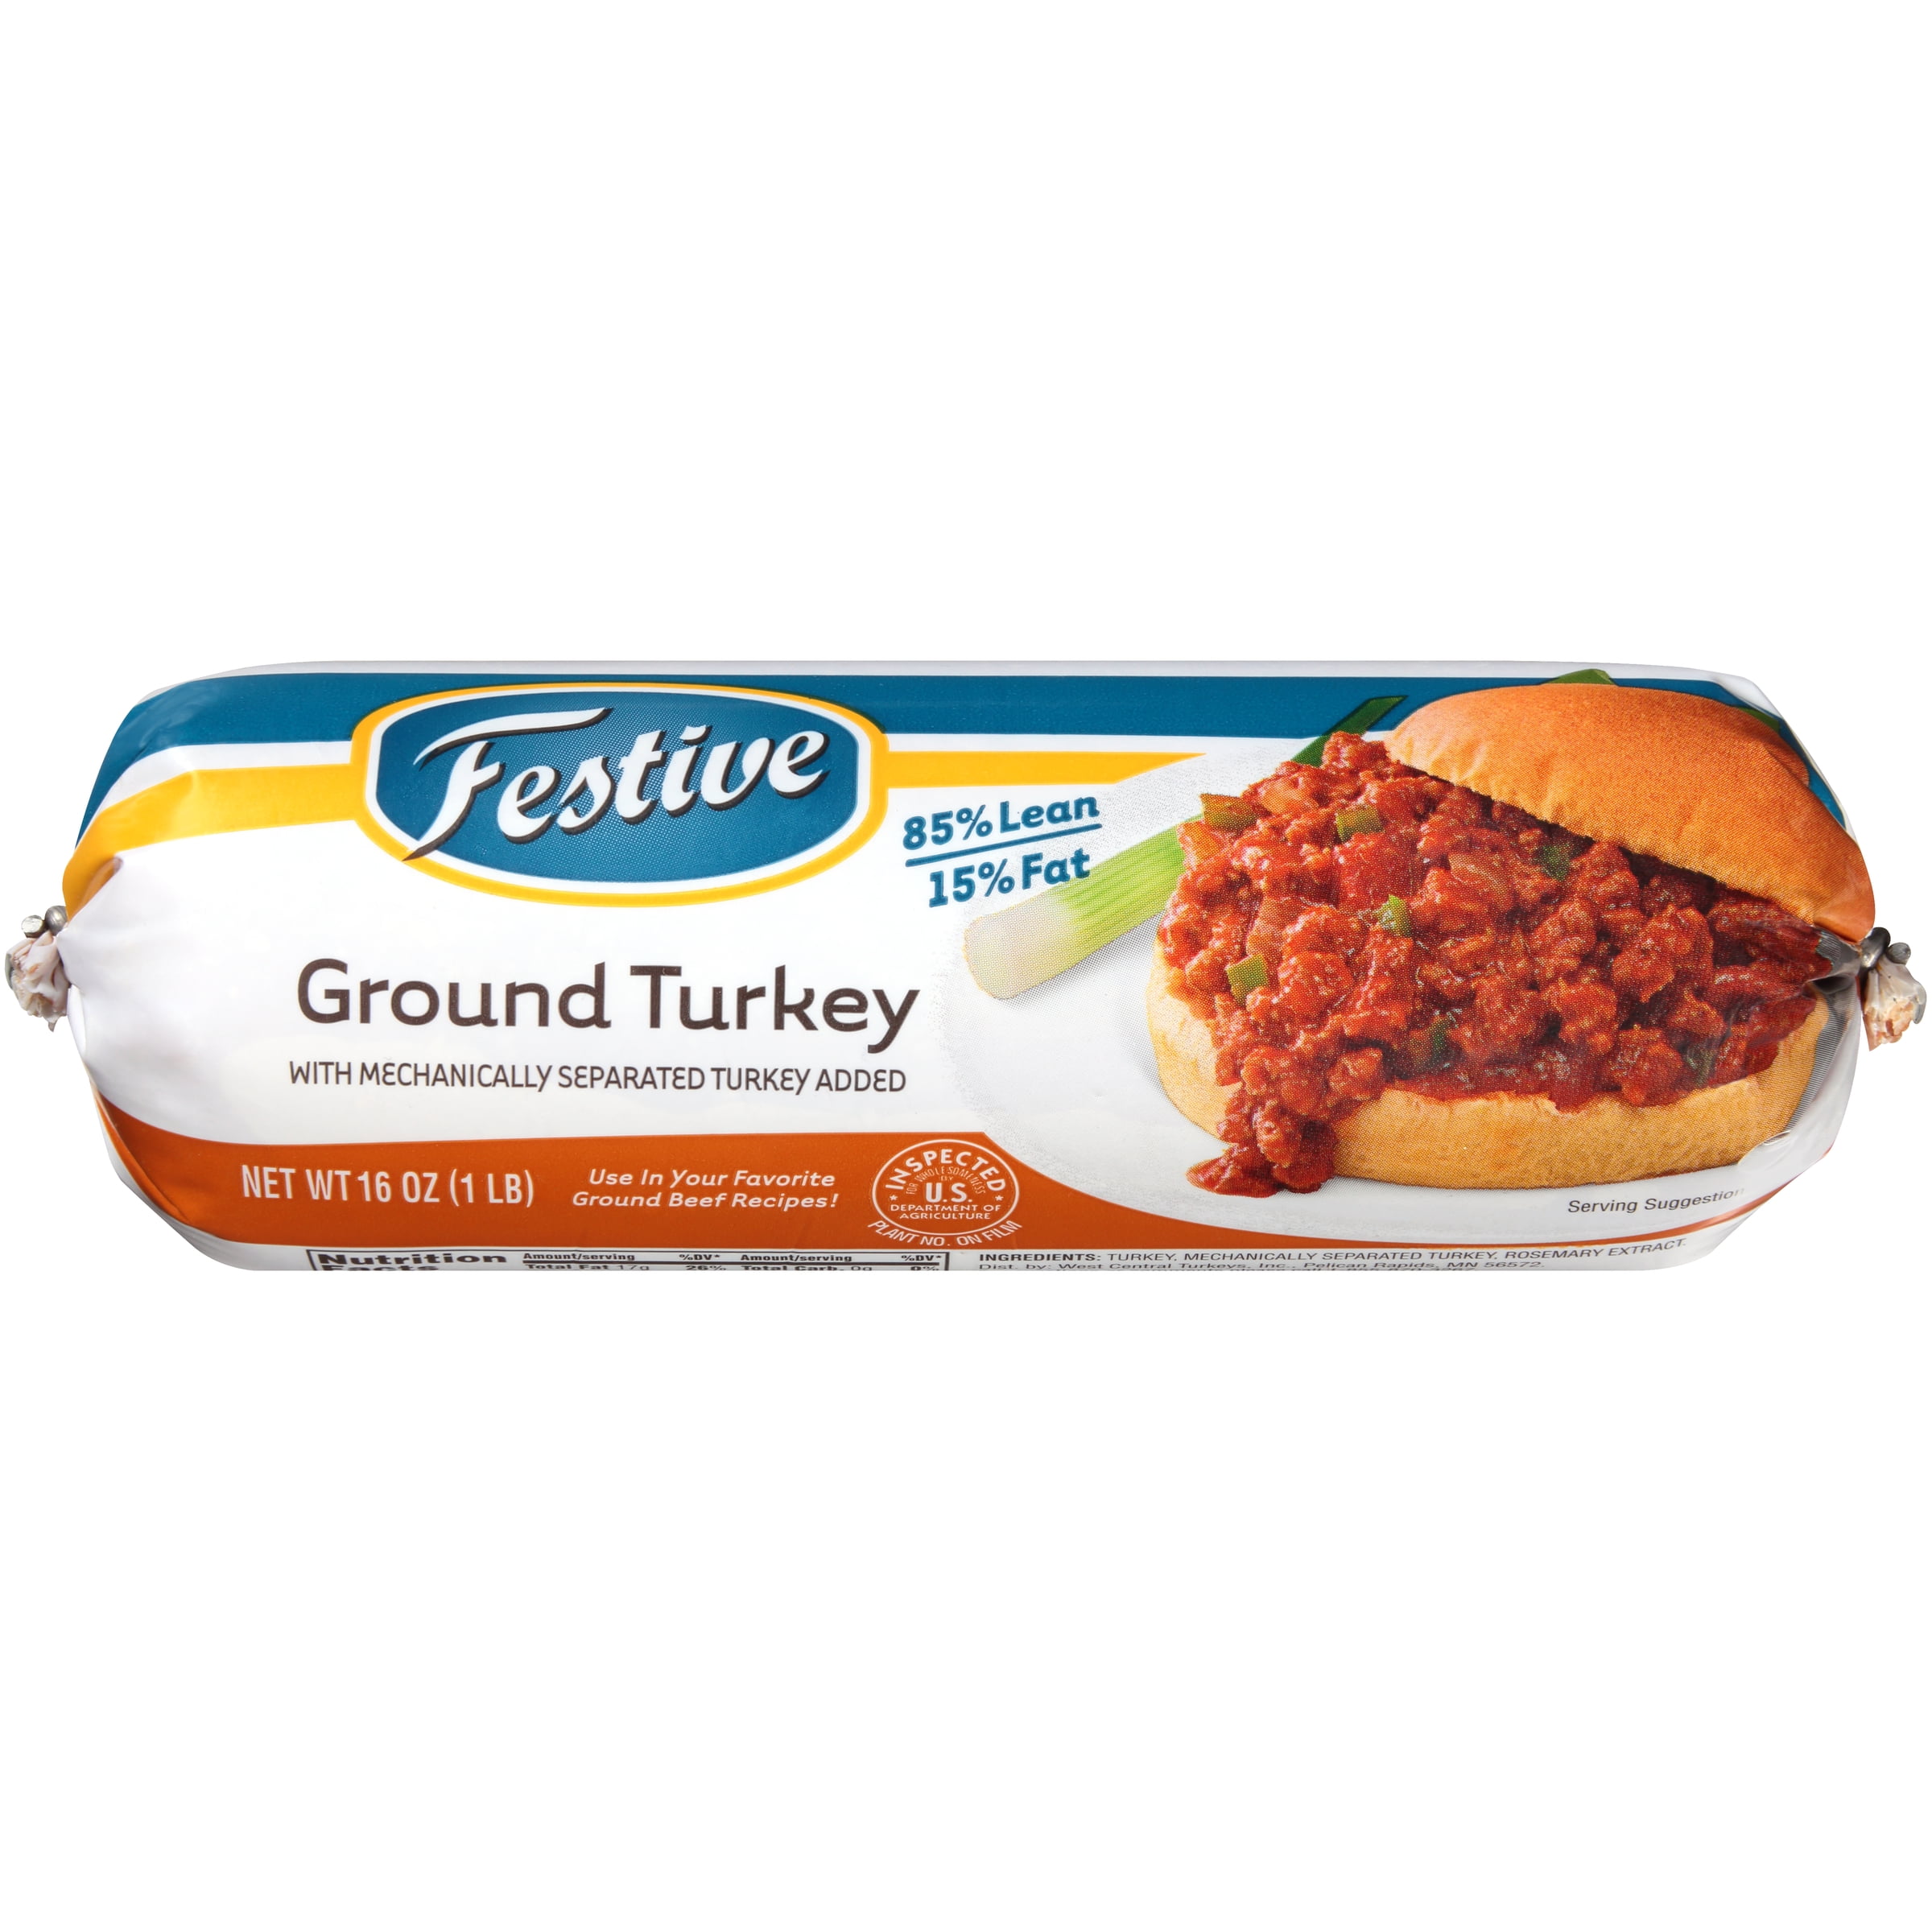 Ground turkey and type 2 diabetes. 